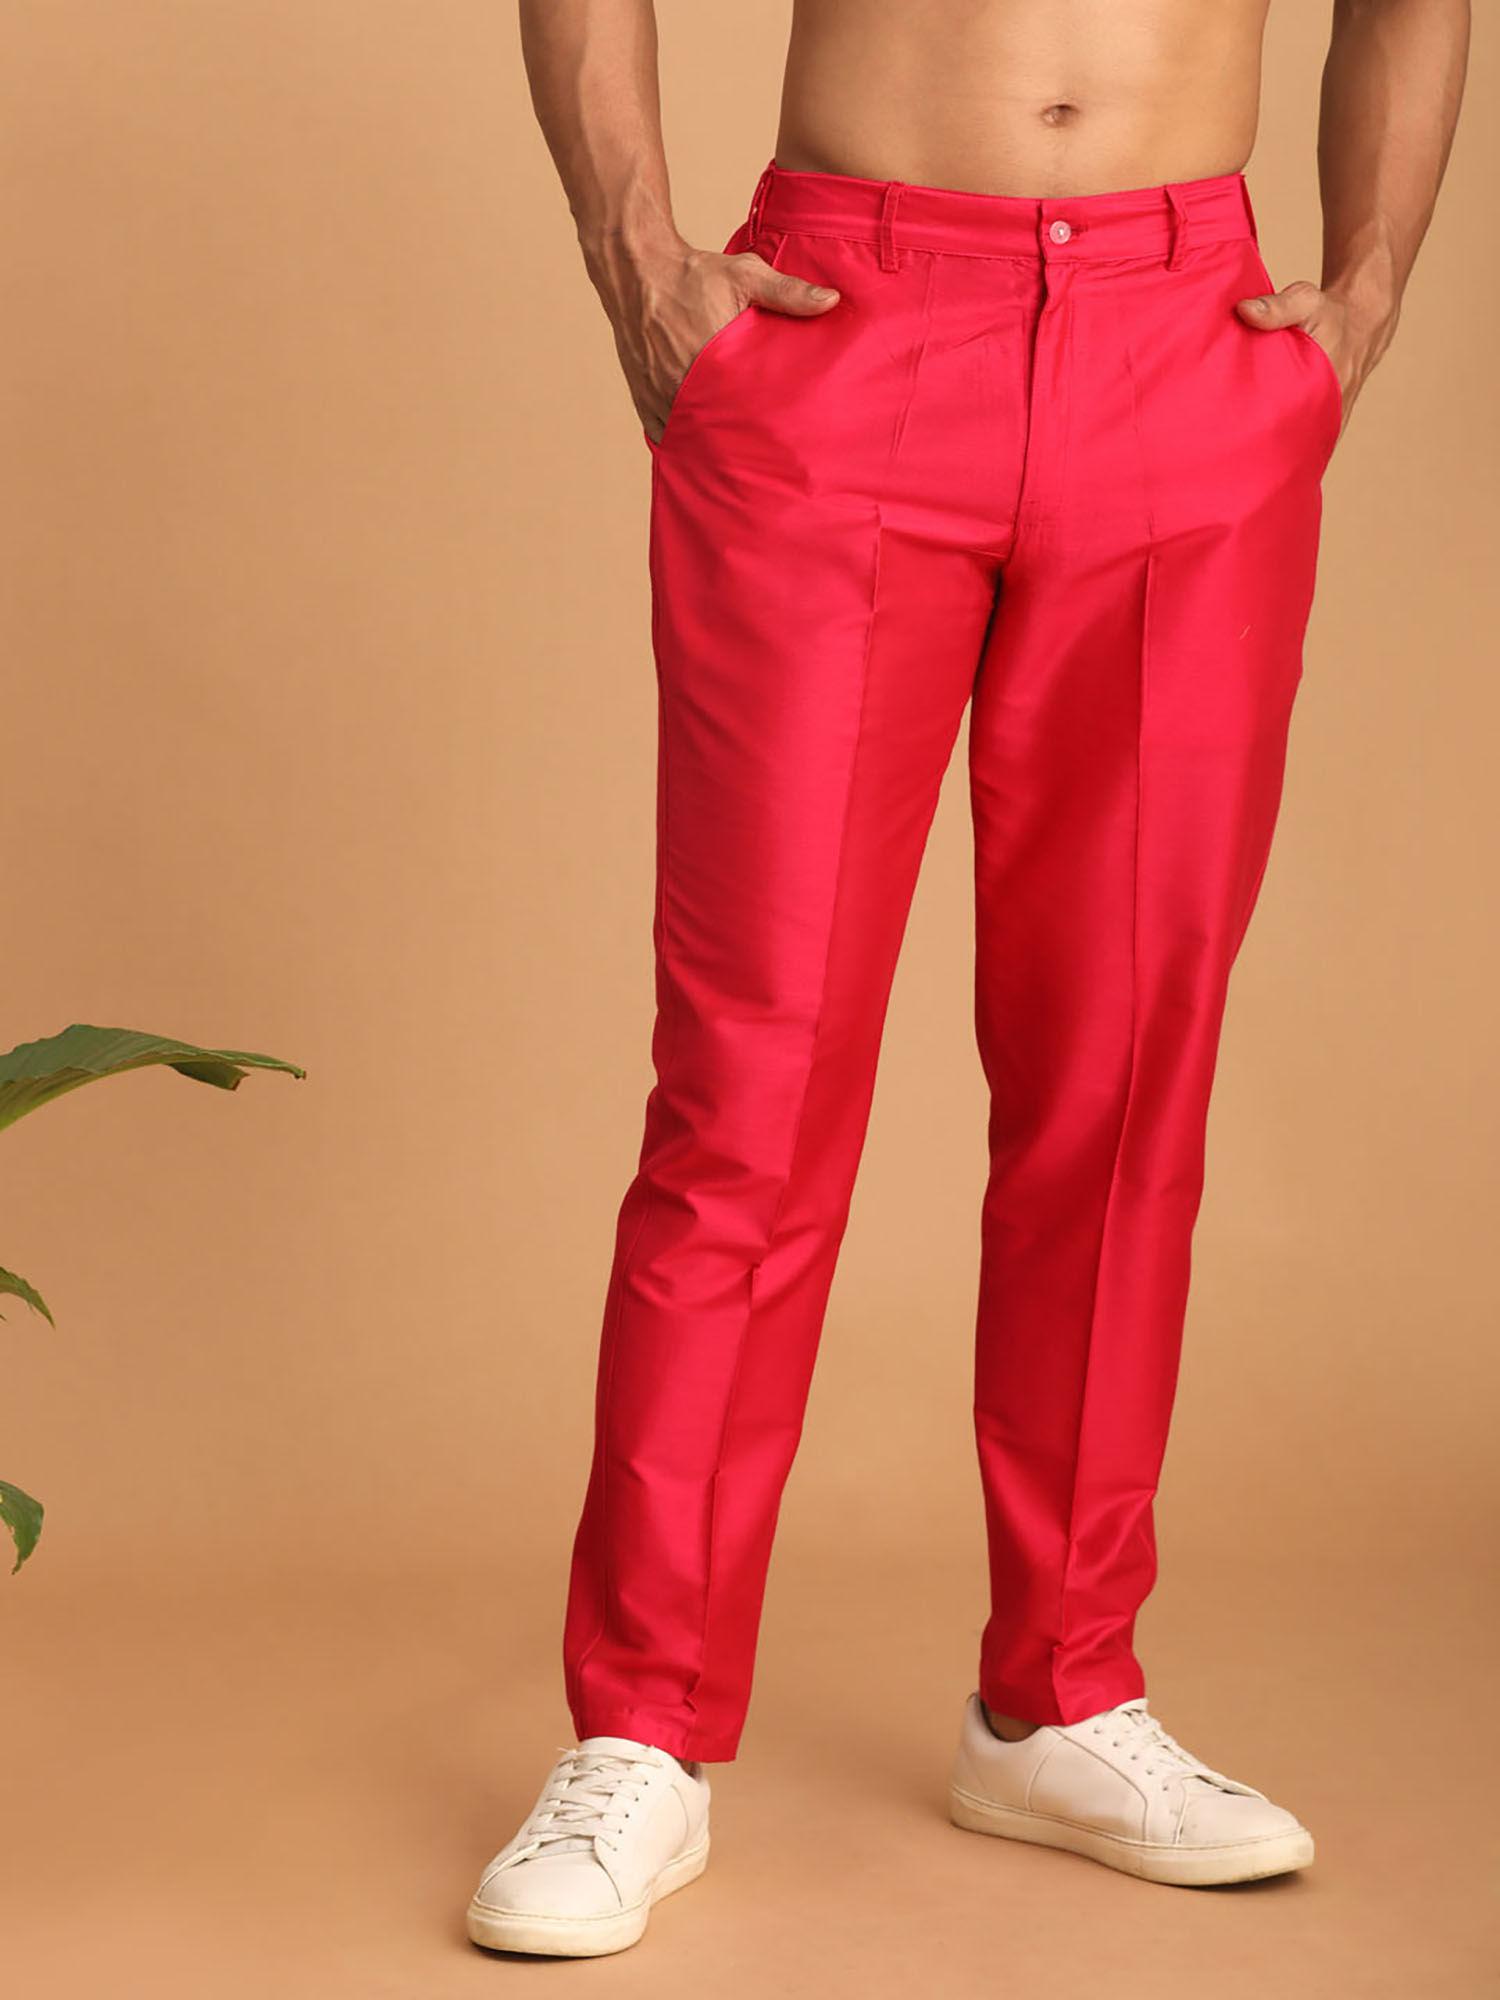 men's pink viscose pant style churidar